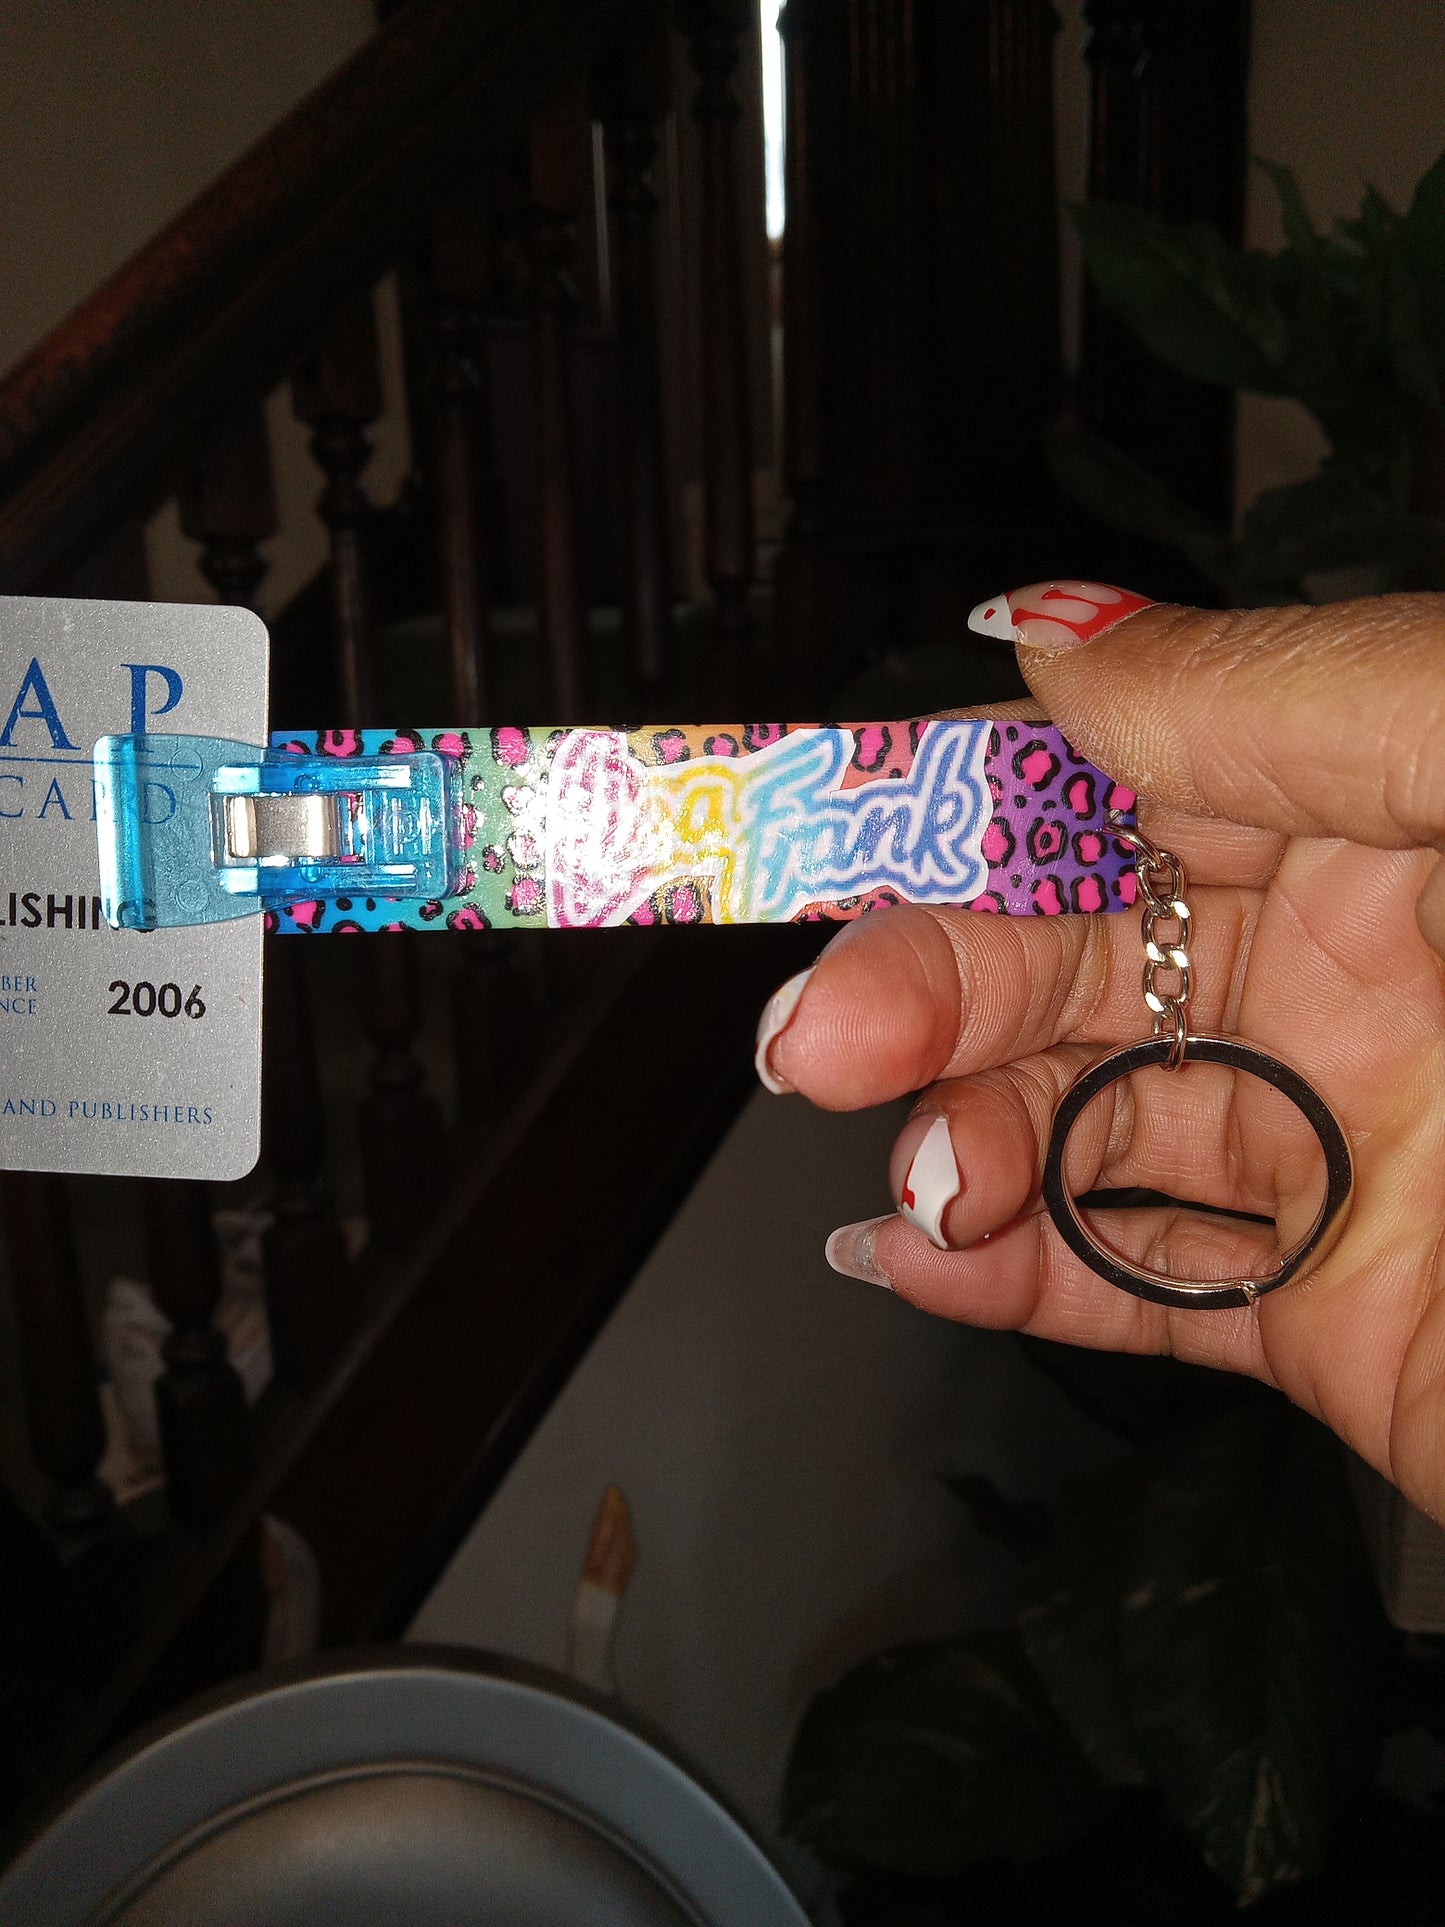 Lisa Frank keychain/Credit Card Grabber for Nails.